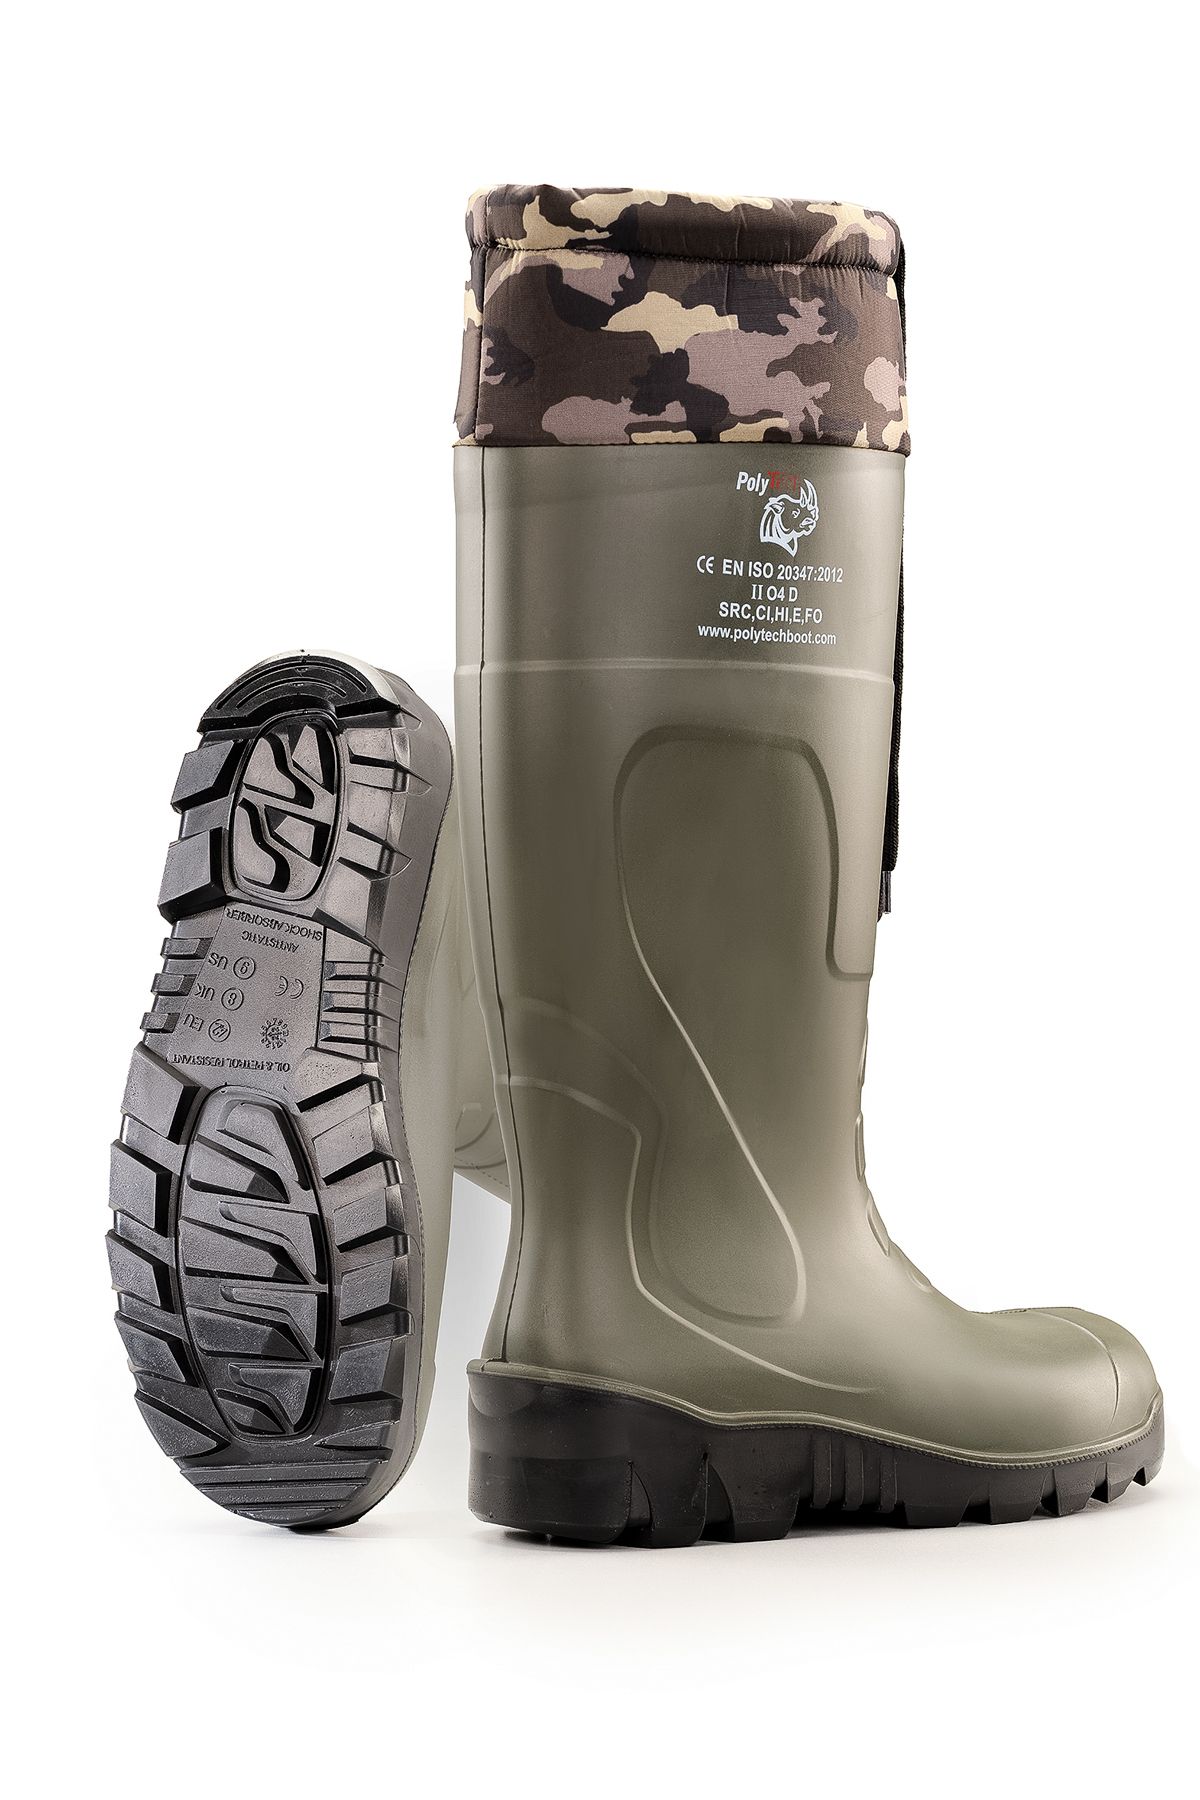 POLYTECH Boot Poliüretan Boğazlı Çizme O4, Avcı Çizmesi, Standart Koruma, Çelik Burunsuz İş Çizmesi